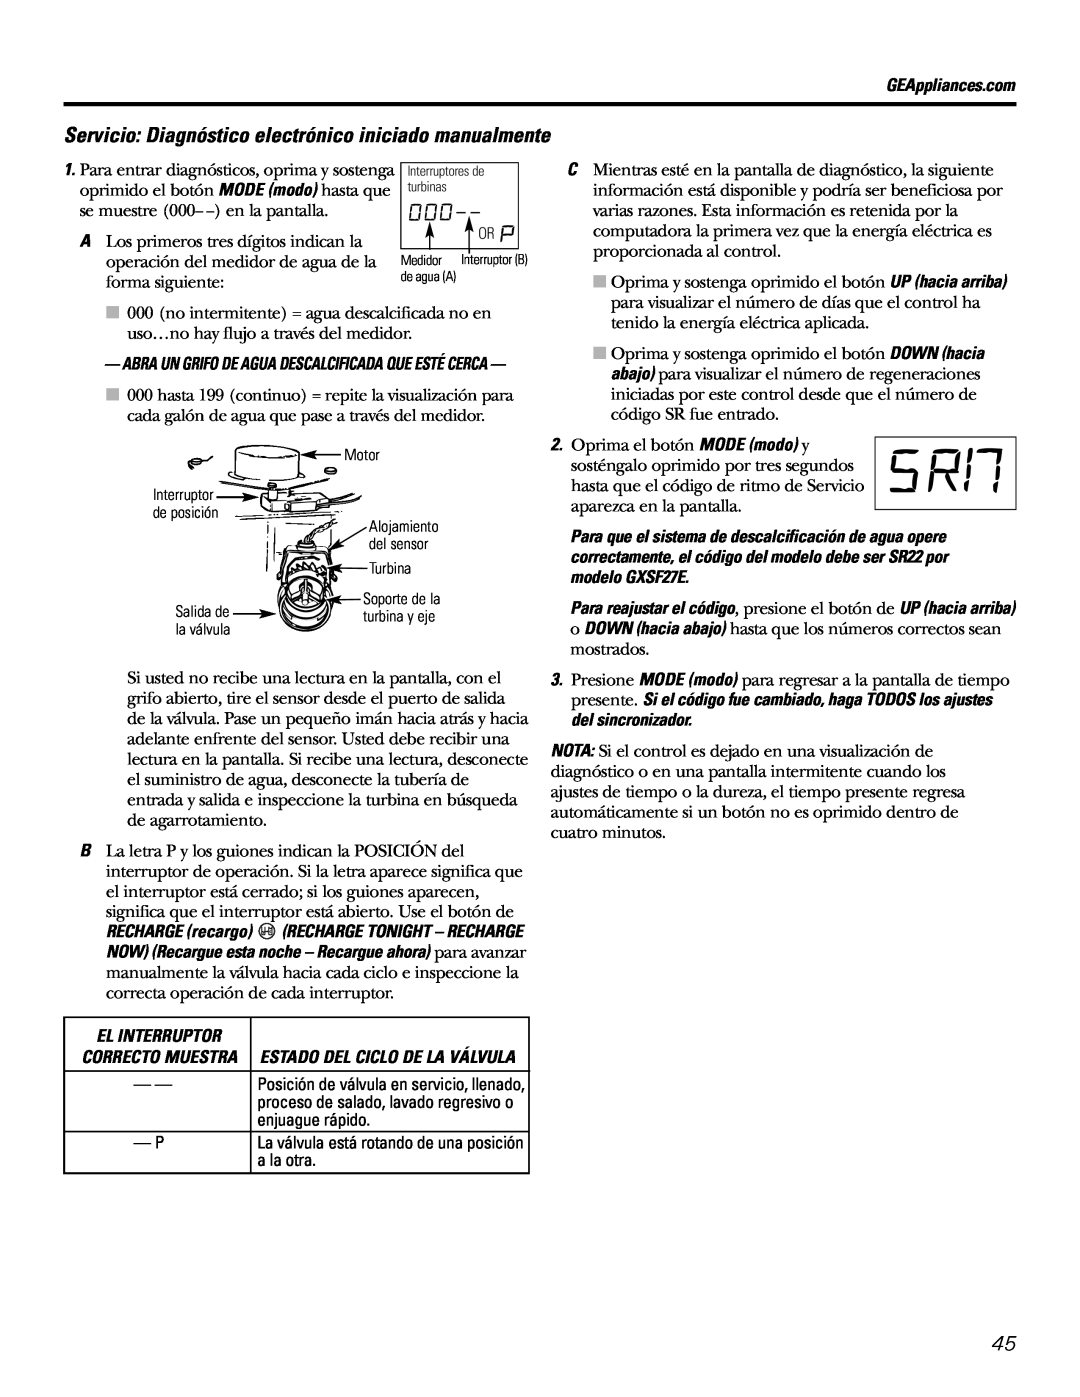 GE GXSF27E manual El Interruptor, Correcto Muestra Estado Del Ciclo De La Válvula 